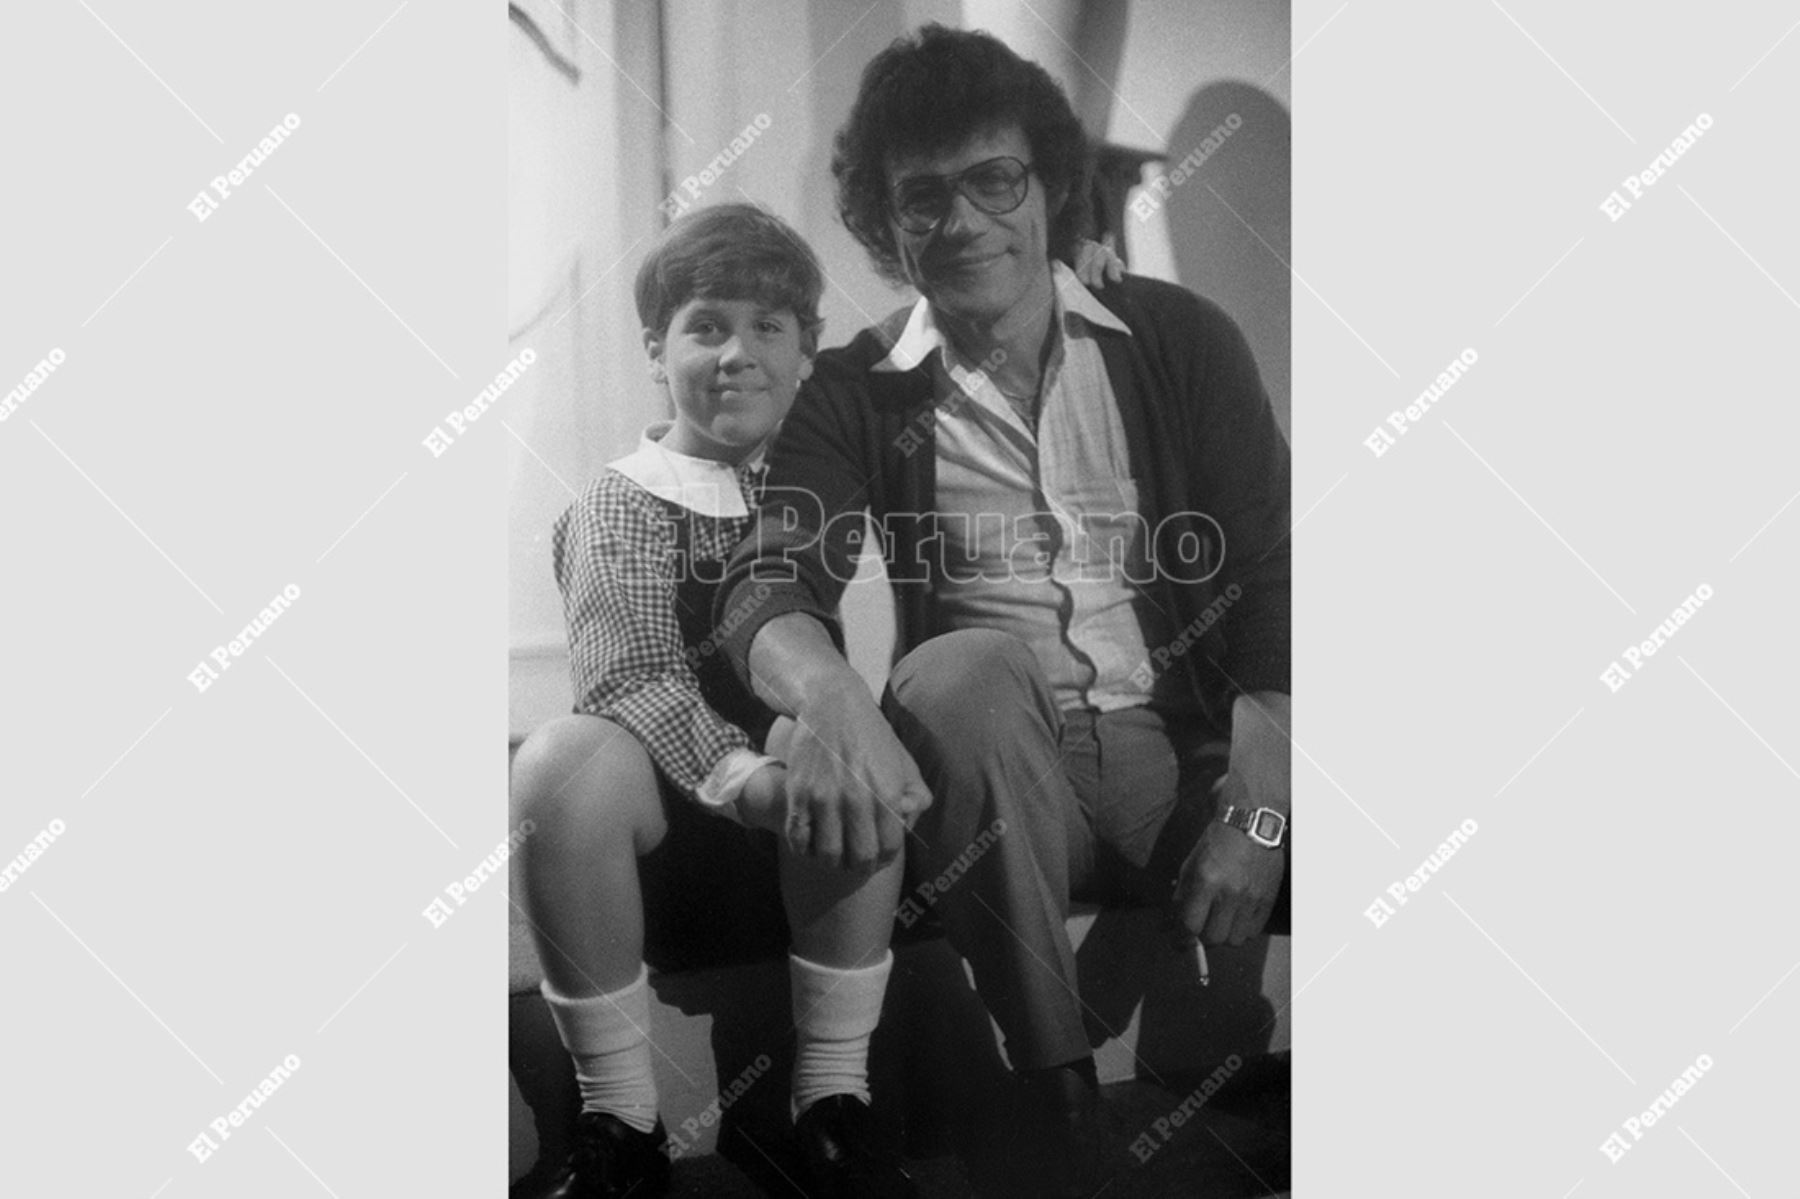 Lima - 5 octubre 1981 / Gian Marco Zignago, al lado de su padre, el cantante Joe Danova. Foto: Archivo Histórico de El Peruano / Pavel Marrul